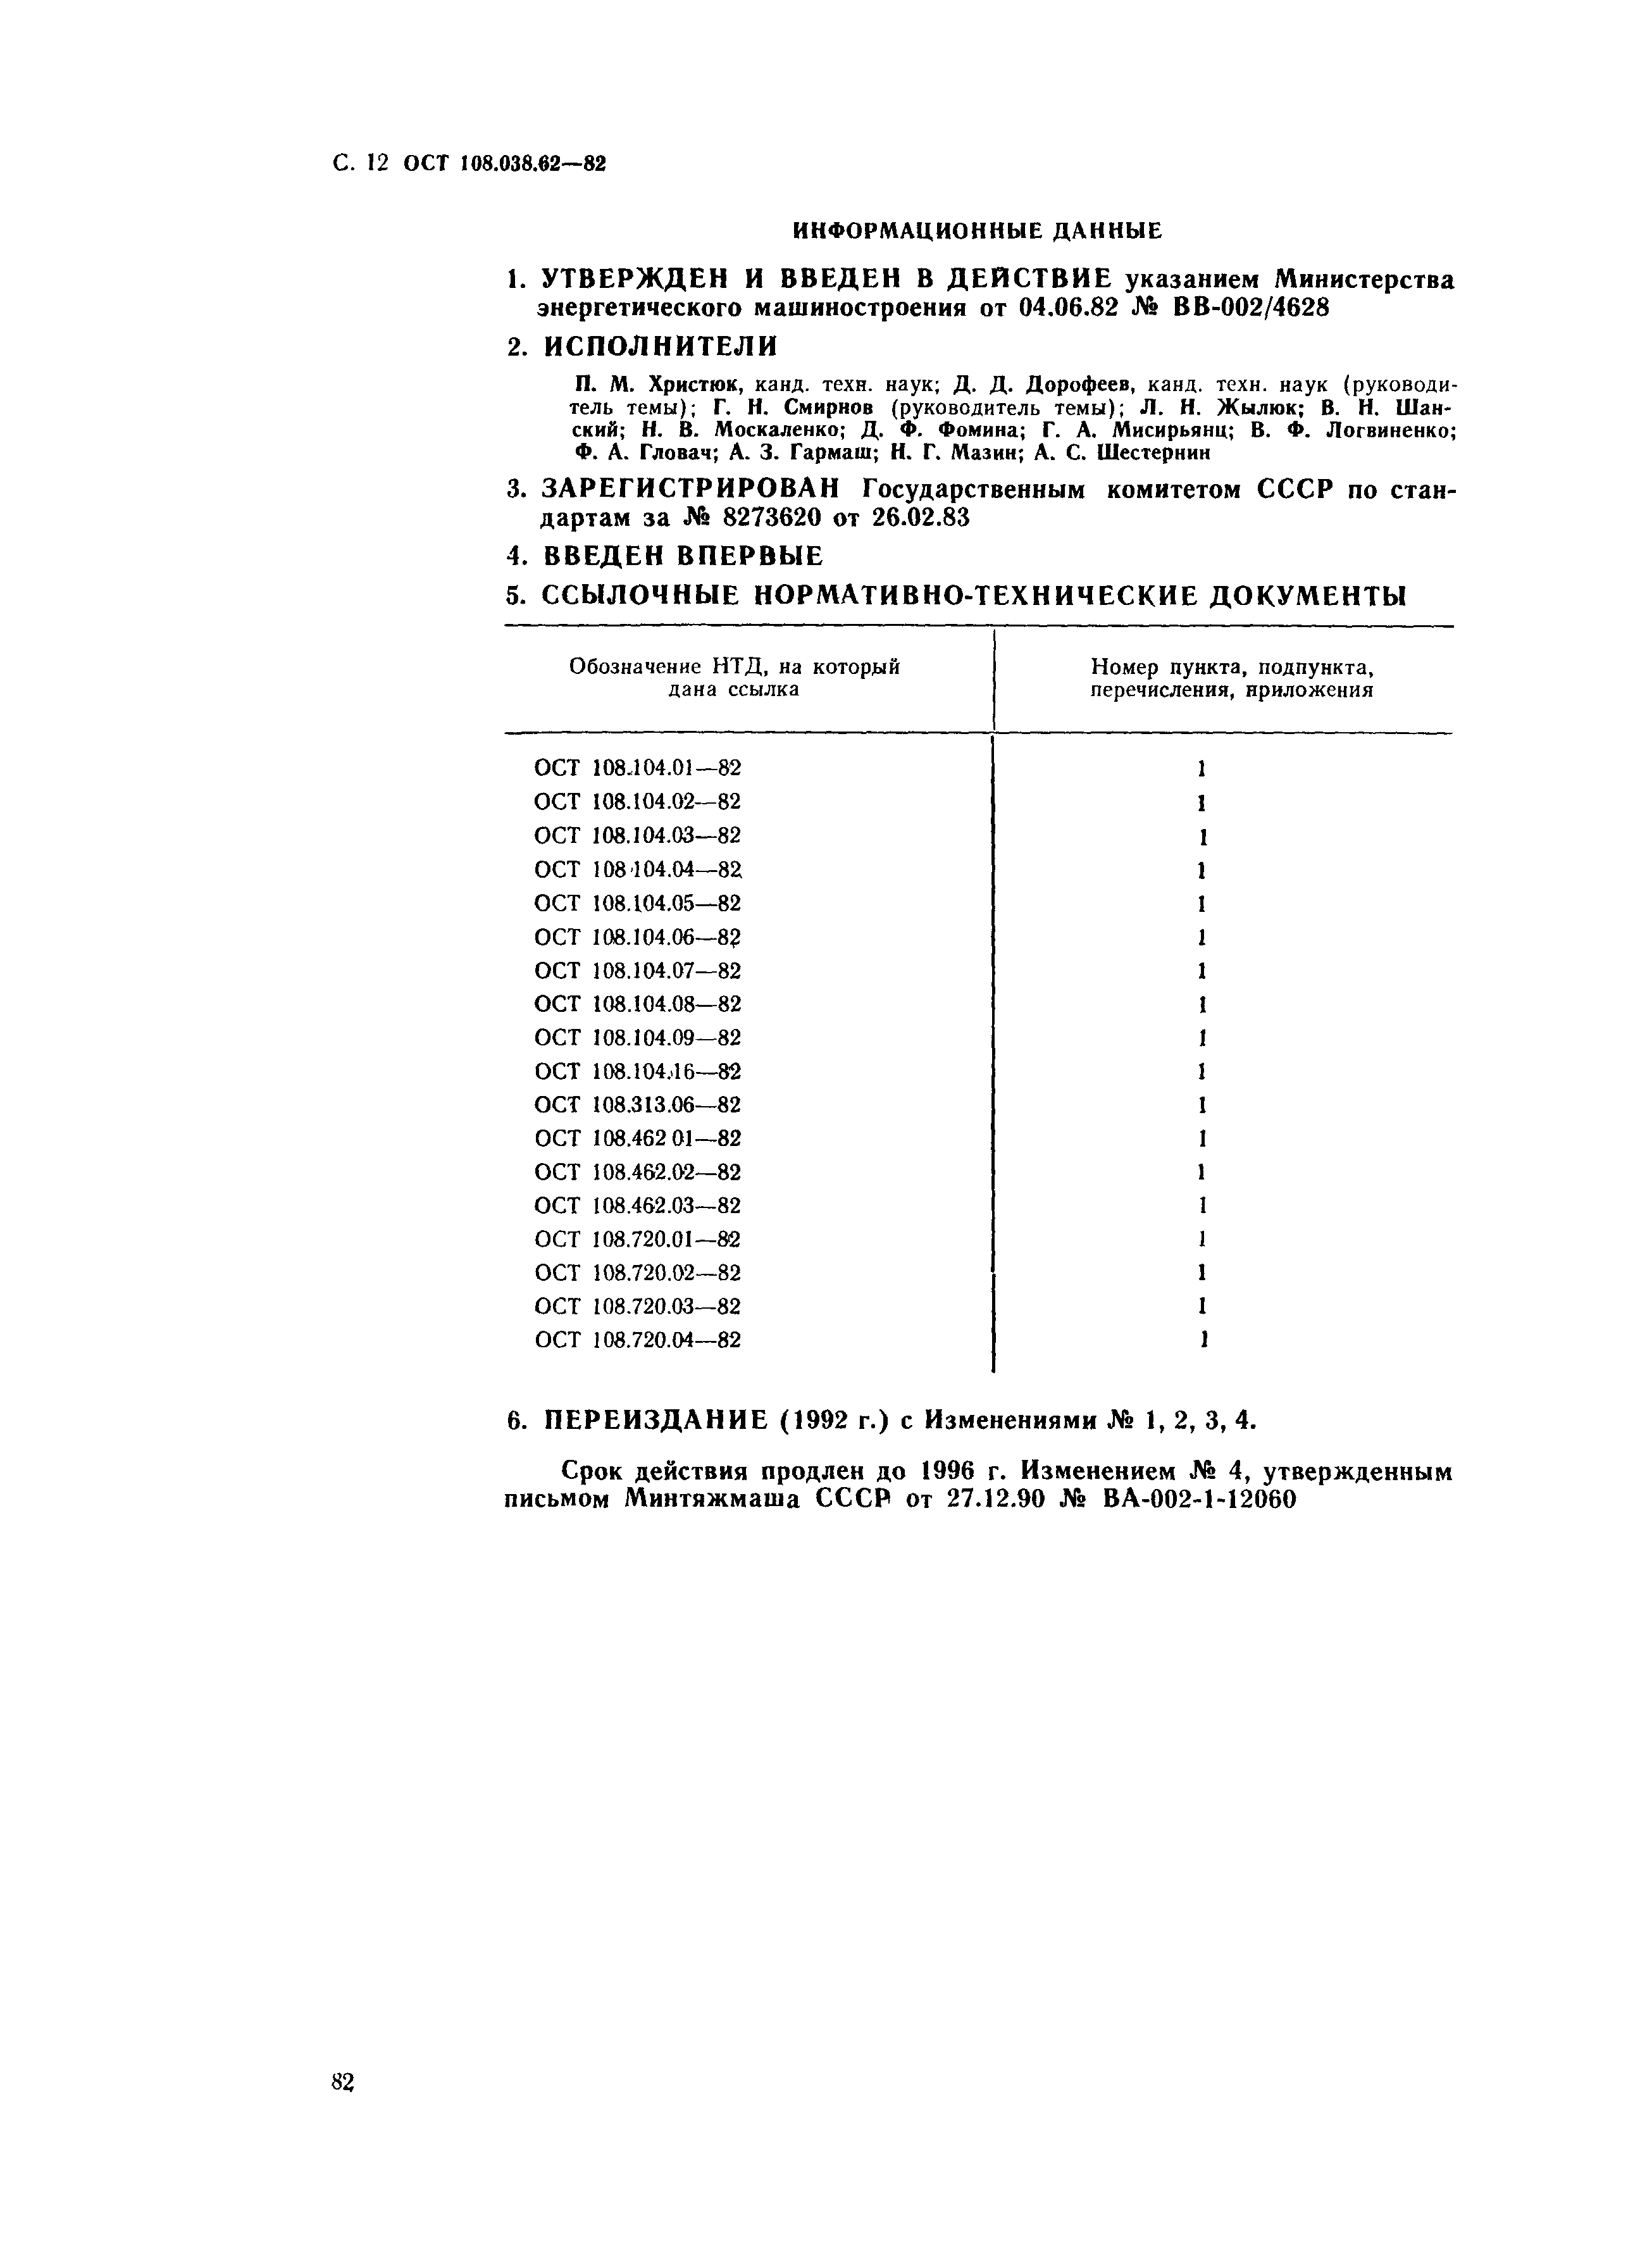 ОСТ 108.038.62-82